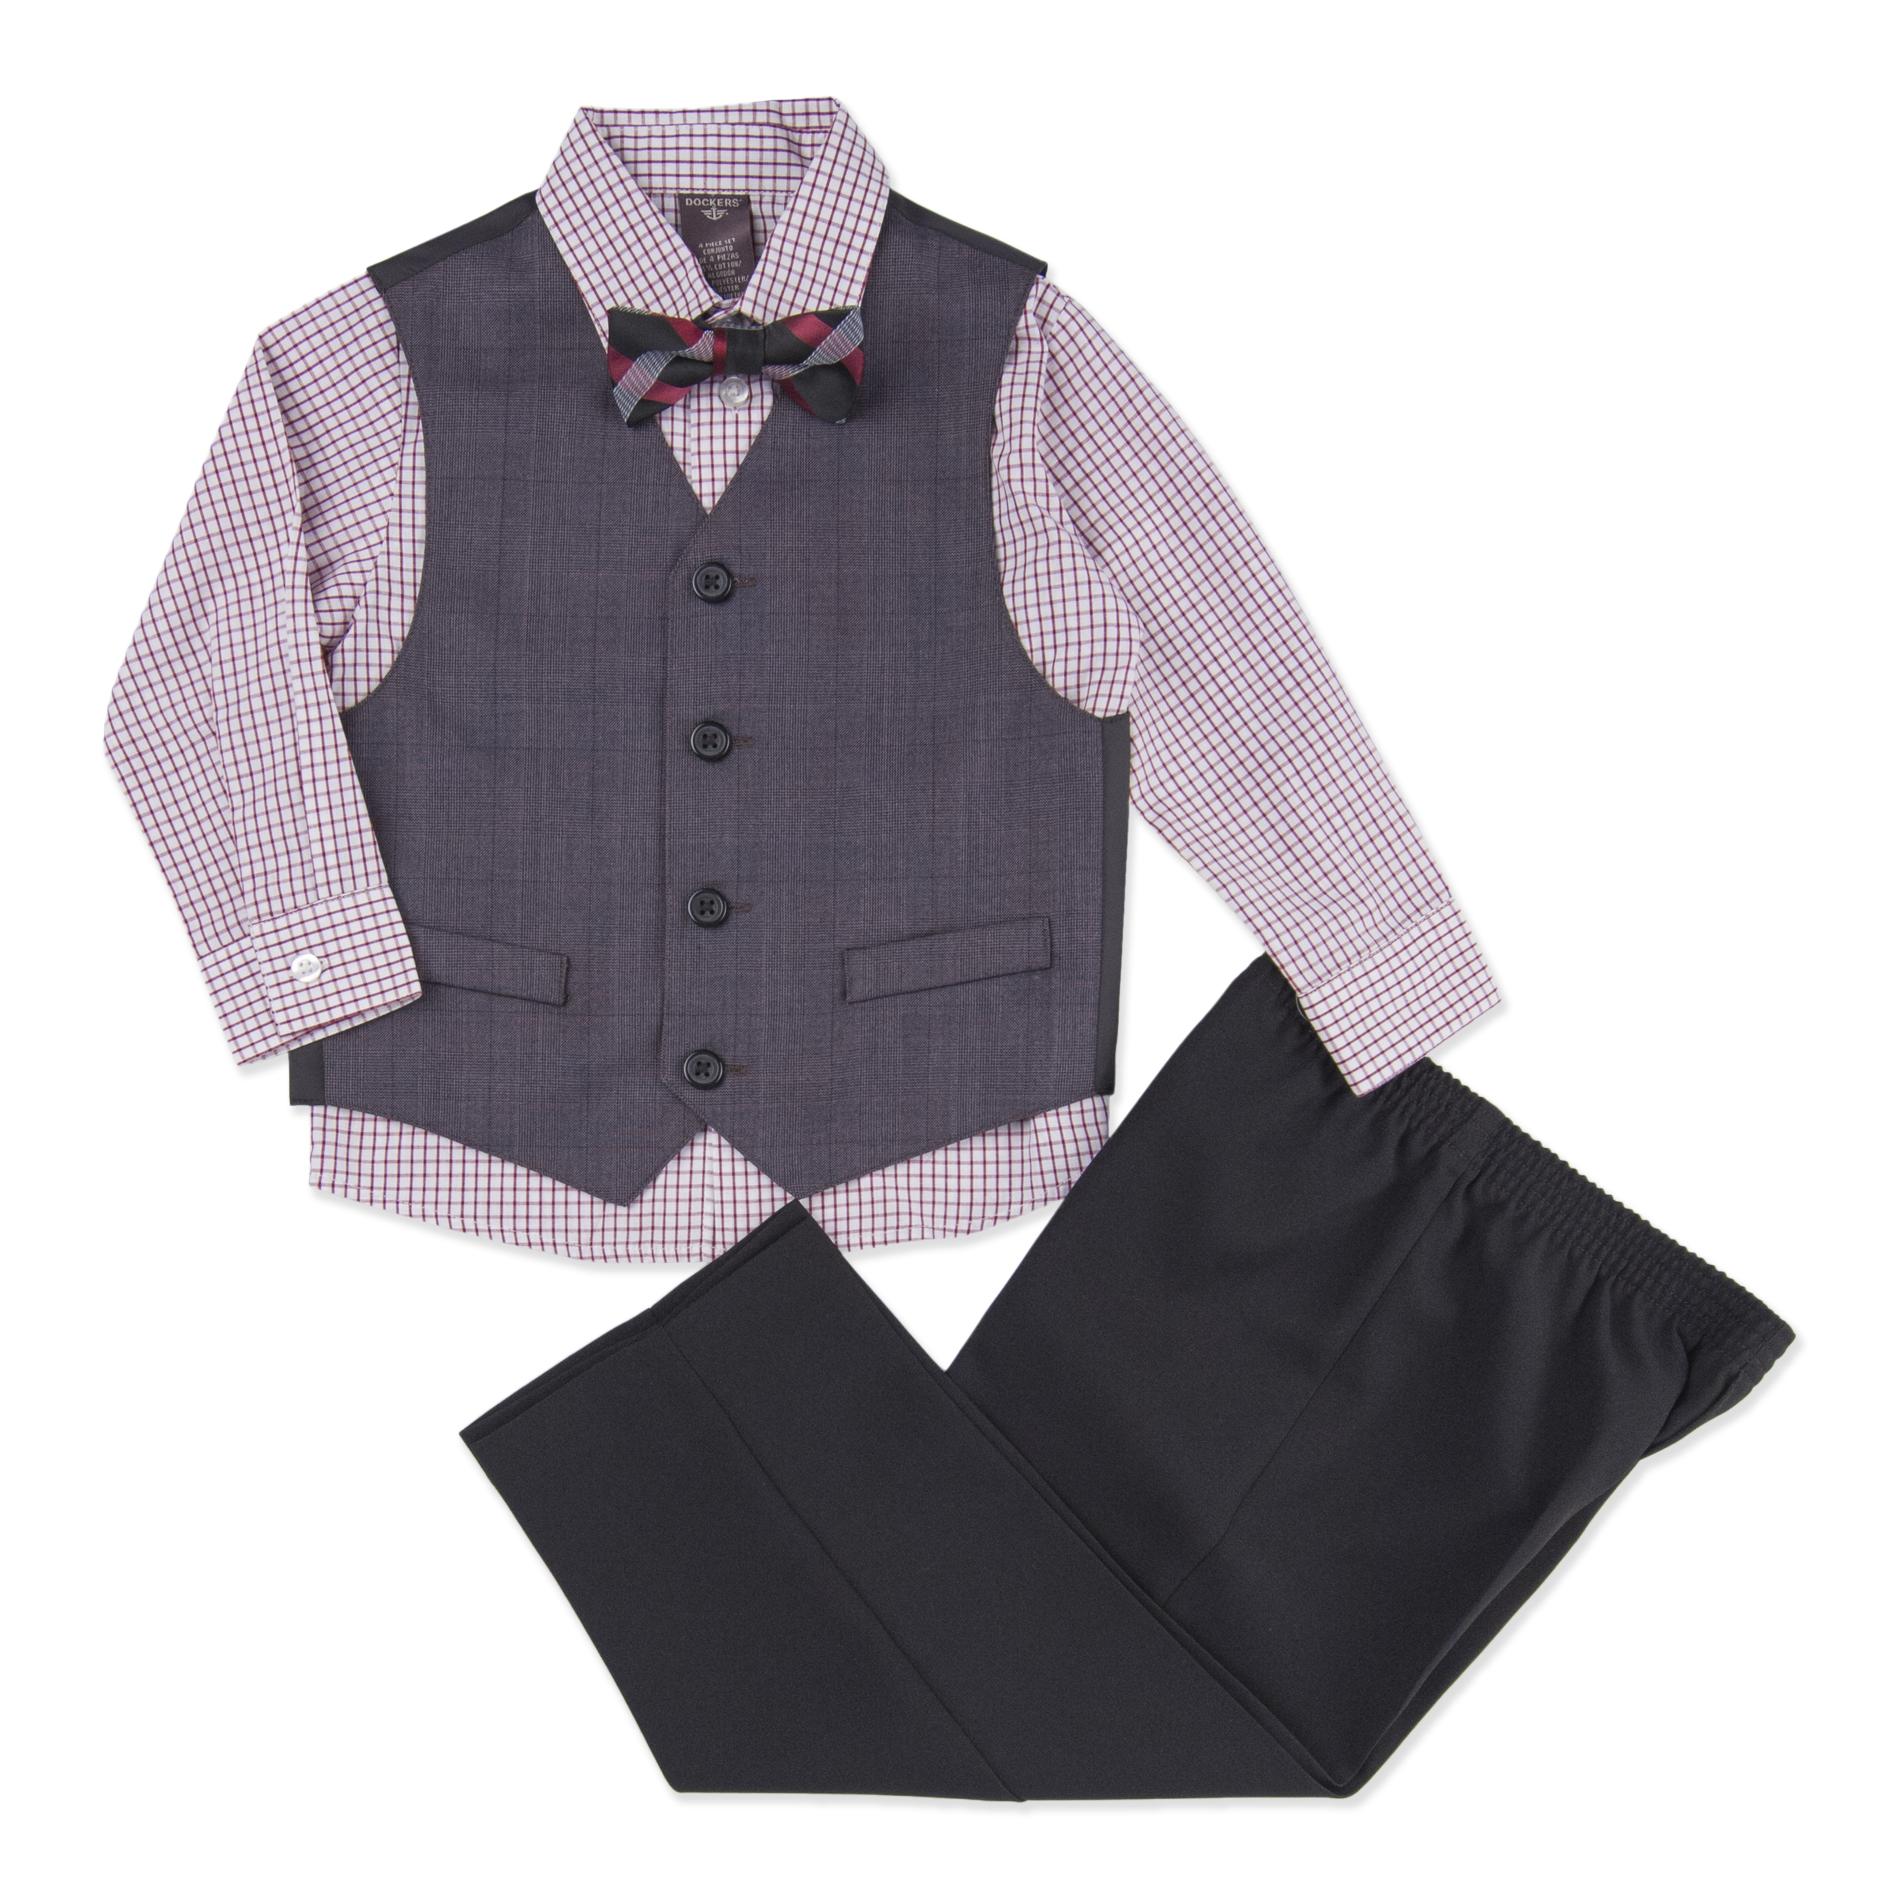 Dockers Infant & Toddler Boy's Vest  Shirt  Bow Tie & Pants - Plaid